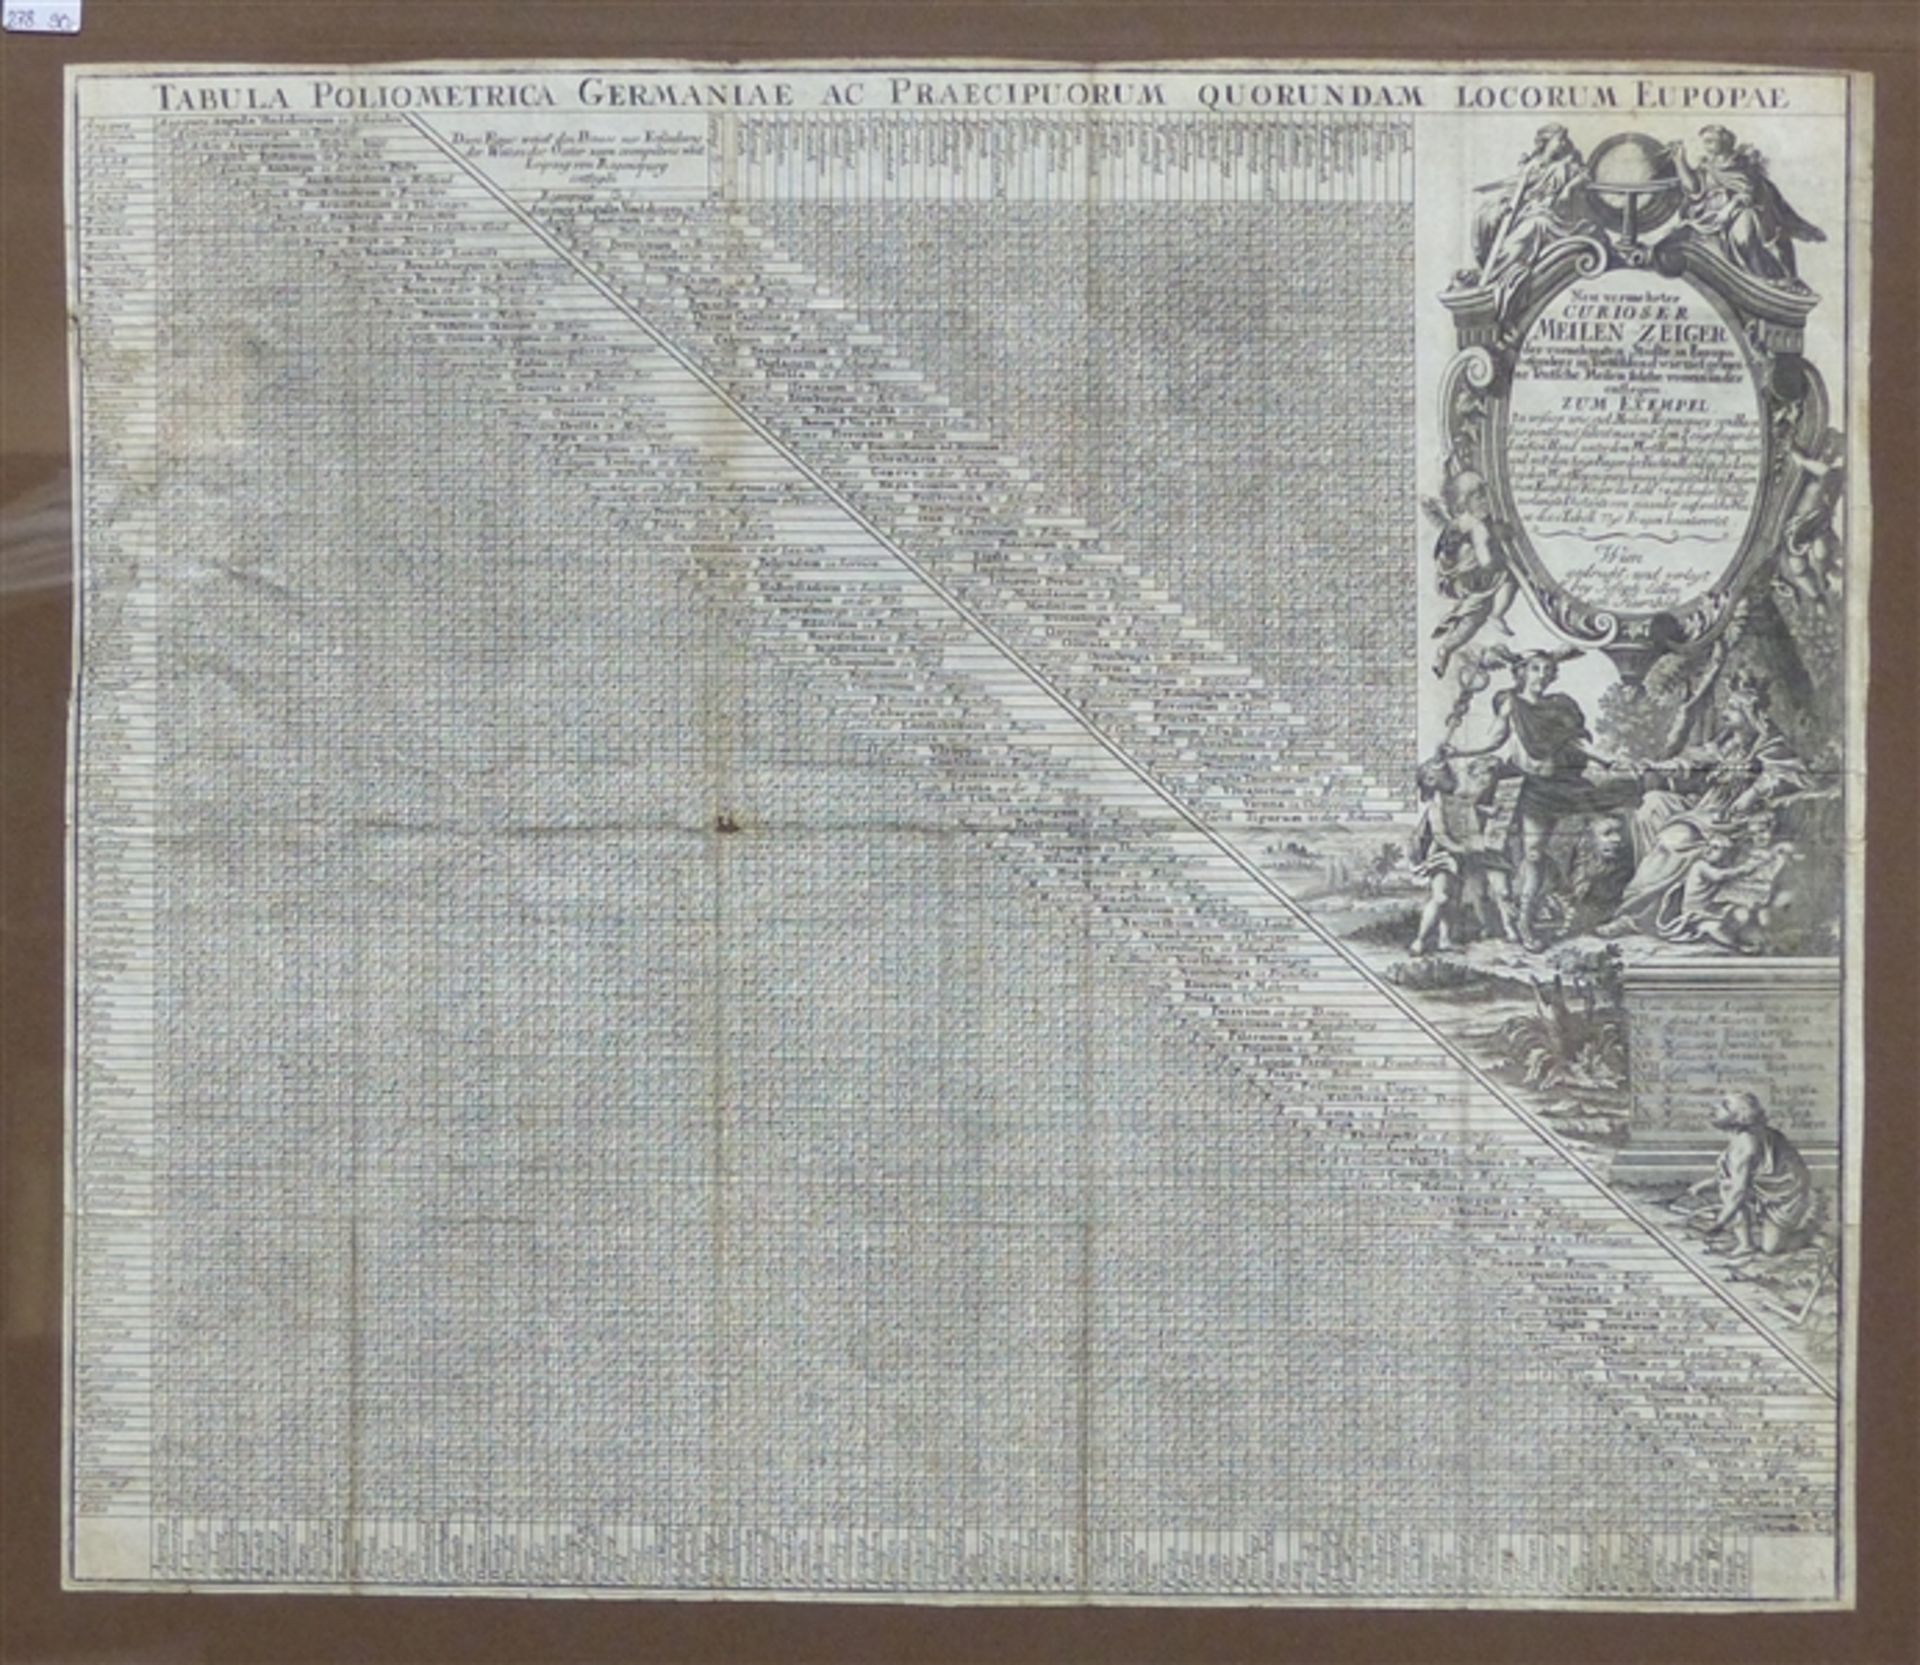 Kupferstich, um 1800 Entfernungstabelle, "Neu vermehrter curioser Meilen-Zeiger", gedruckt und